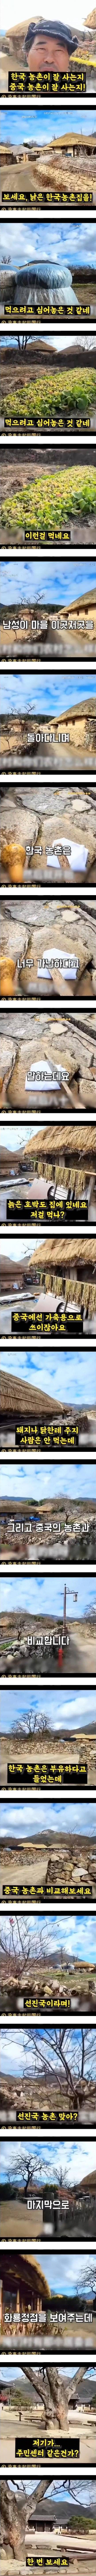 한국 농촌의 실상이라며 중국에 올라온 영상 - 11